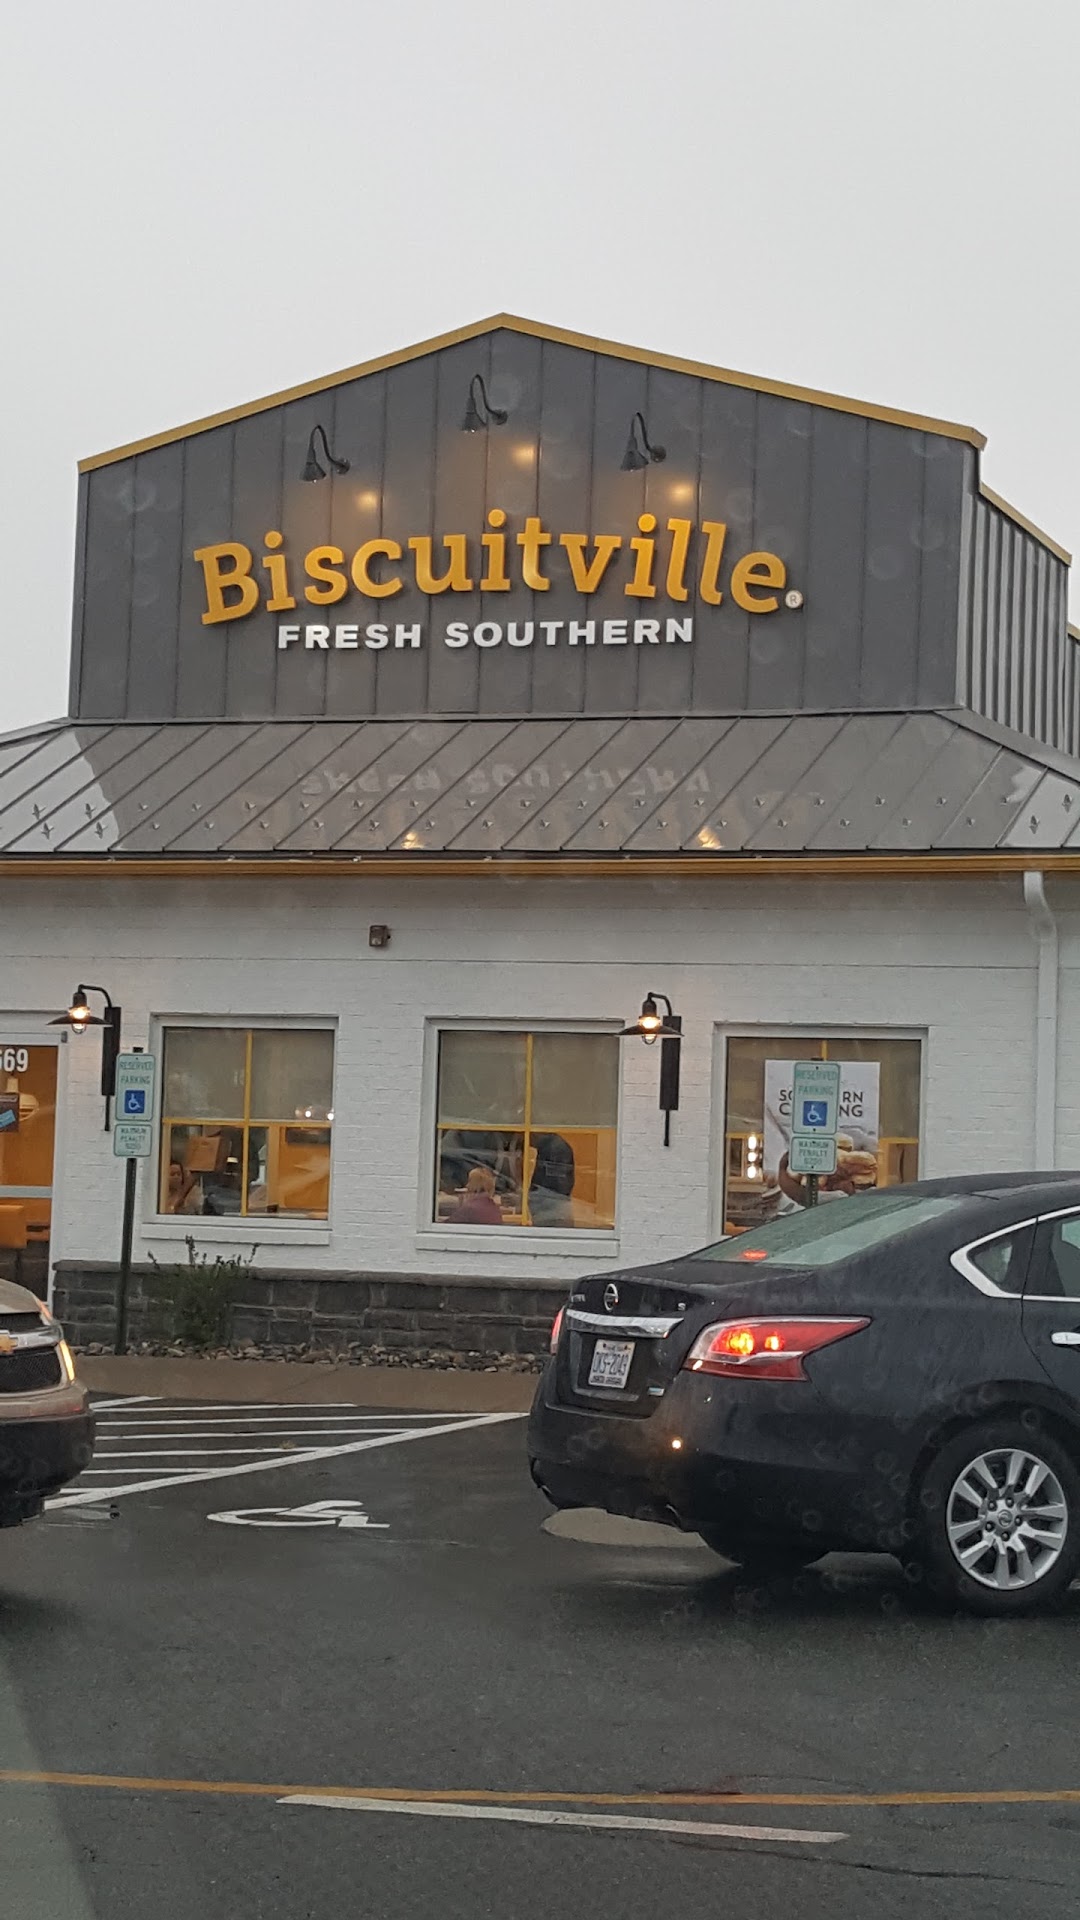 Biscuitville